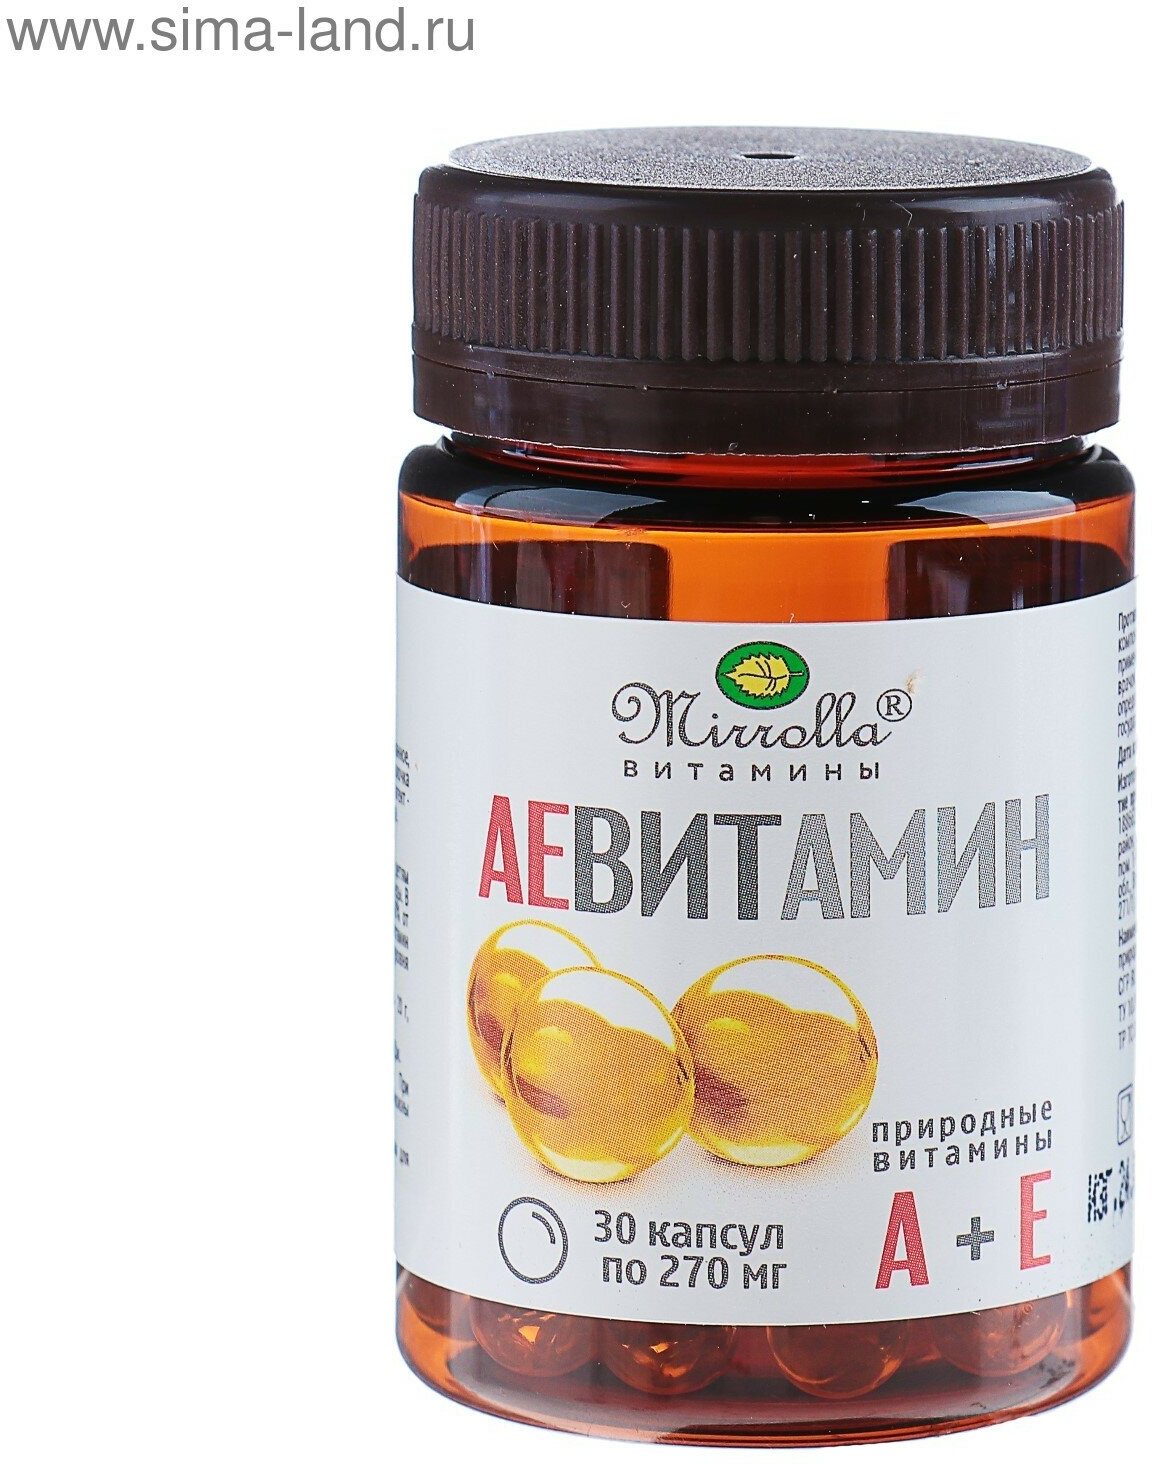 Пищевая добавка «АЕ ВИТамин» с природными витаминами 30 капсул